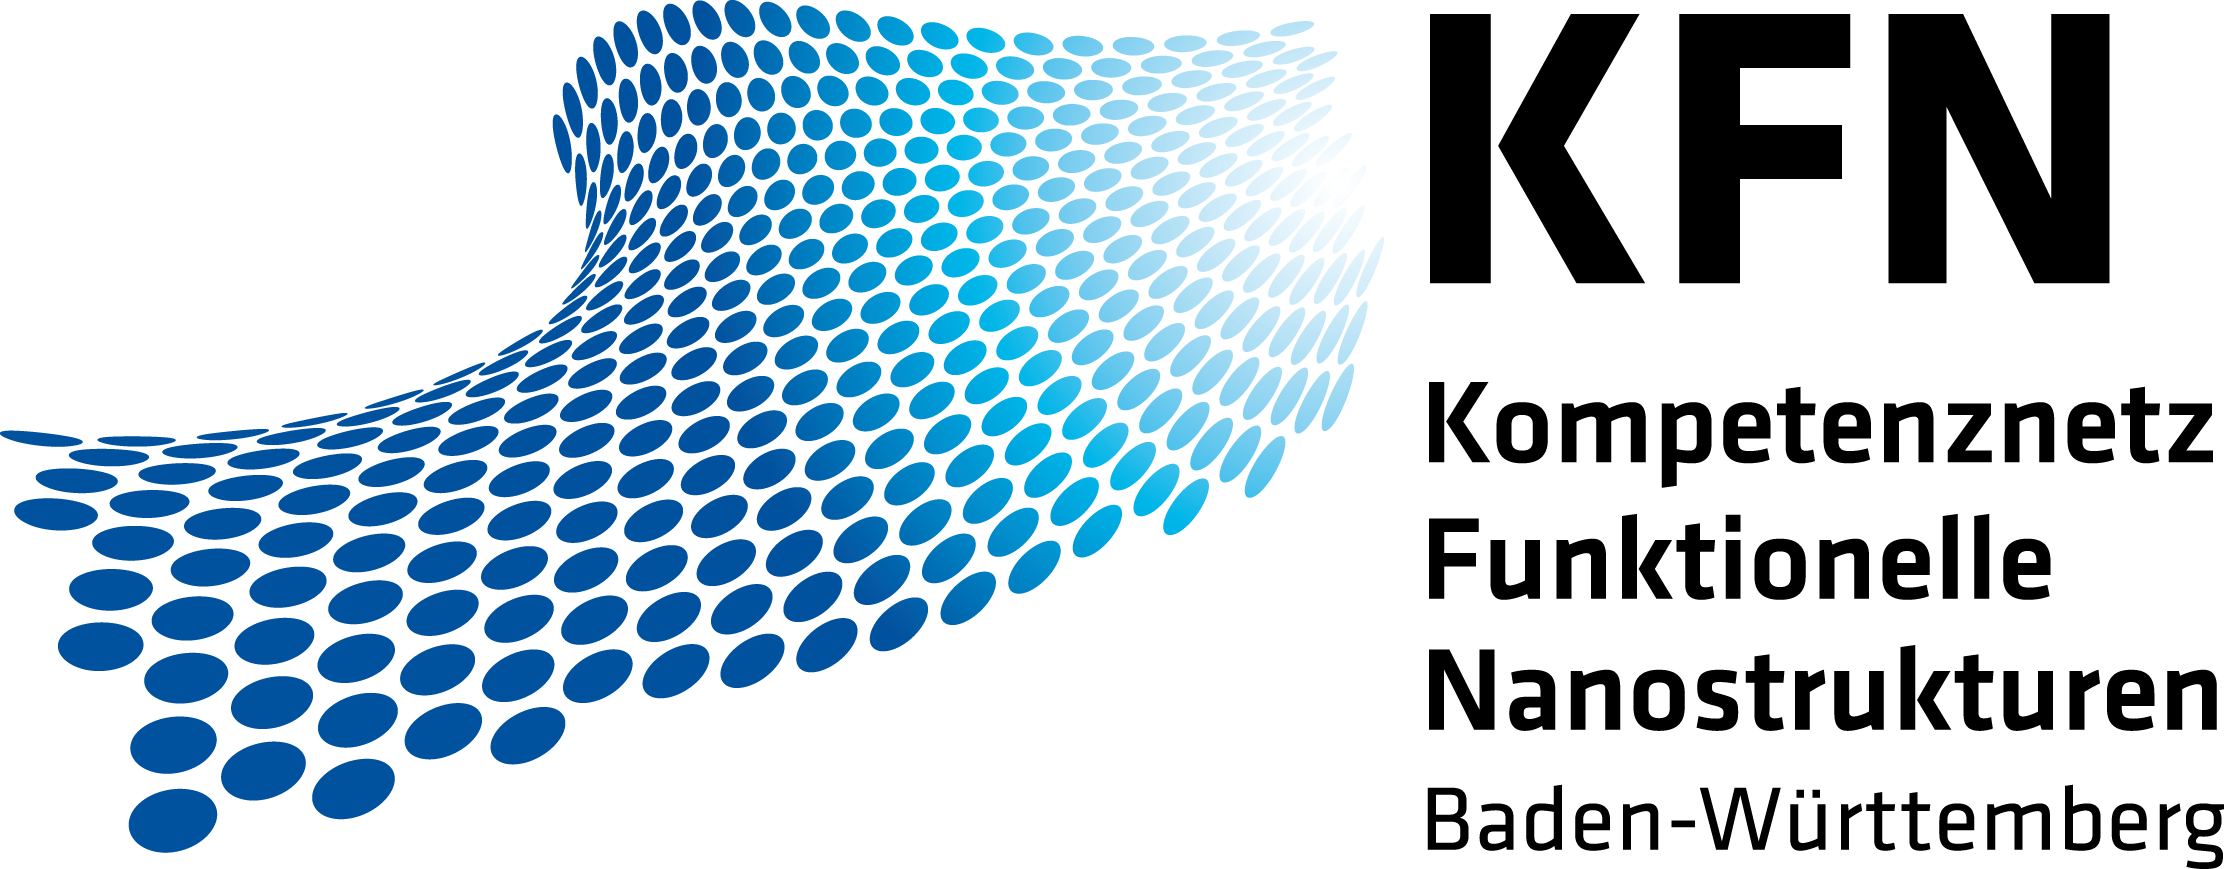 Logo Kompetenznetz Funktionelle Nanostrukturen